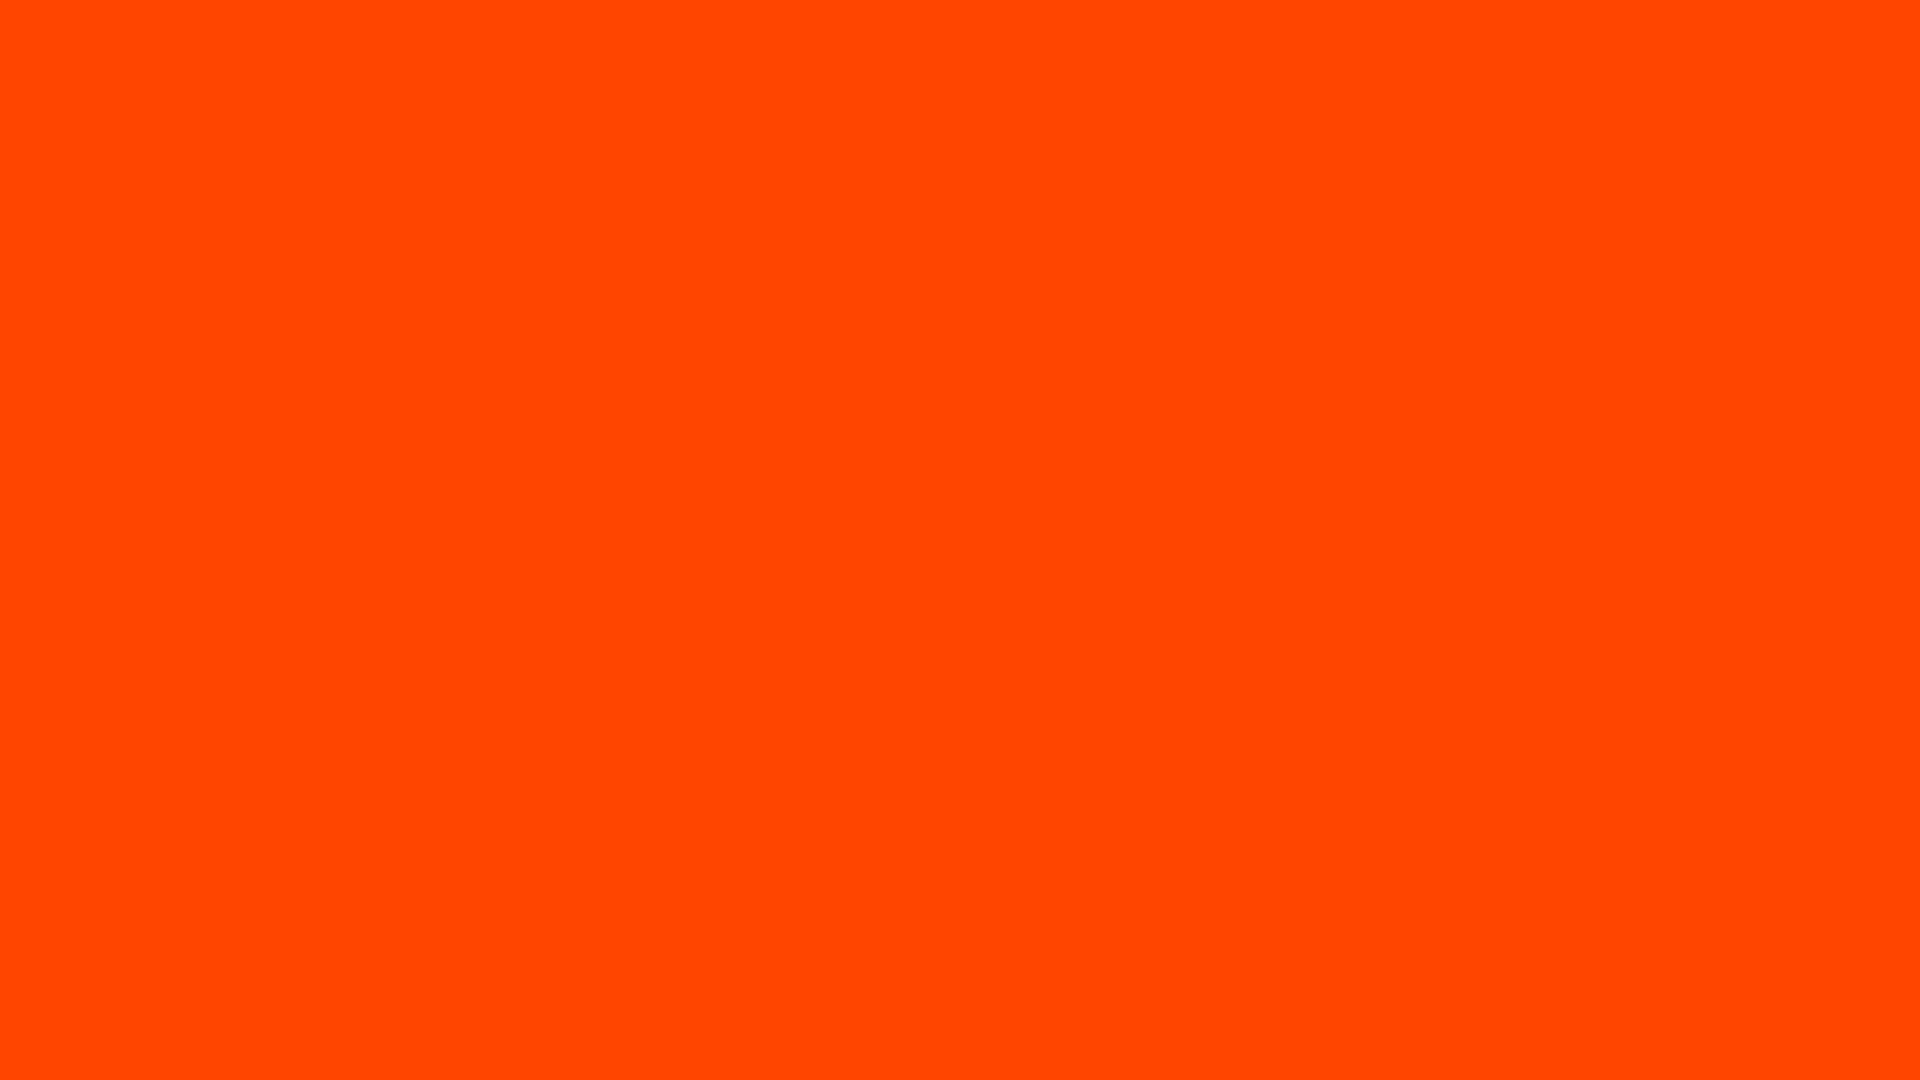 Vẻ đẹp mạnh mẽ và thu hút của Phông nền Mầu đỏ cam đậm 1920x1080 sẽ khiến bạn thích thú. Sự tương phản từ màu sắc sẽ làm cho hình ảnh của bạn trở nên nổi bật và tạo nên ấn tượng mạnh mẽ cho người nhìn. Hãy xem hình ảnh để tìm hiểu thêm.